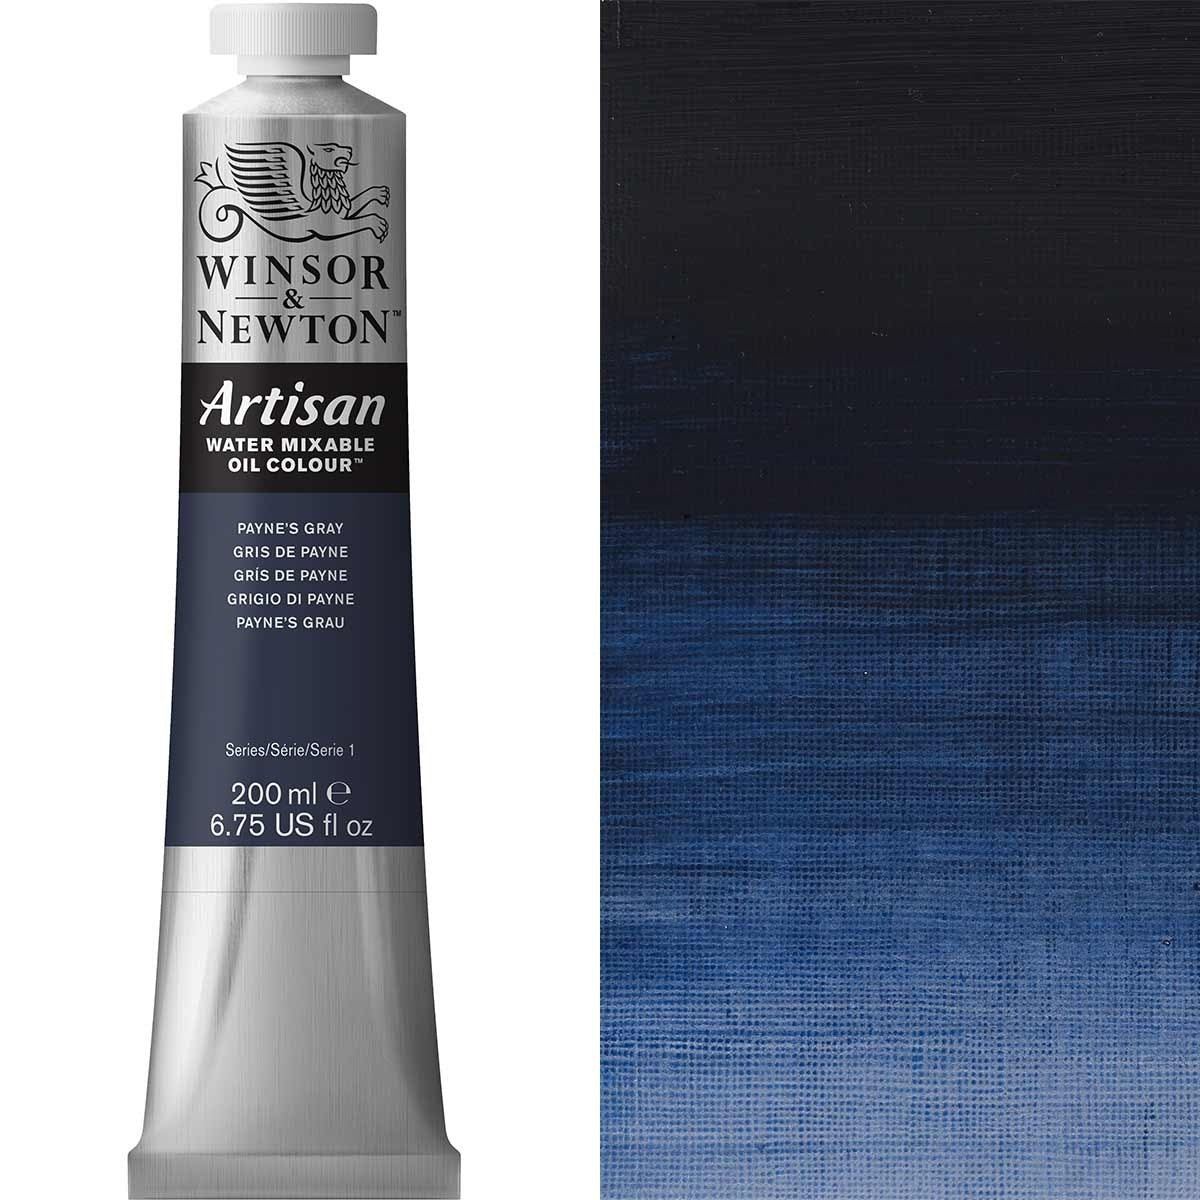 Winsor en Newton - Artisan Oil Color Water Mixable - 200ml - Paynes Gray